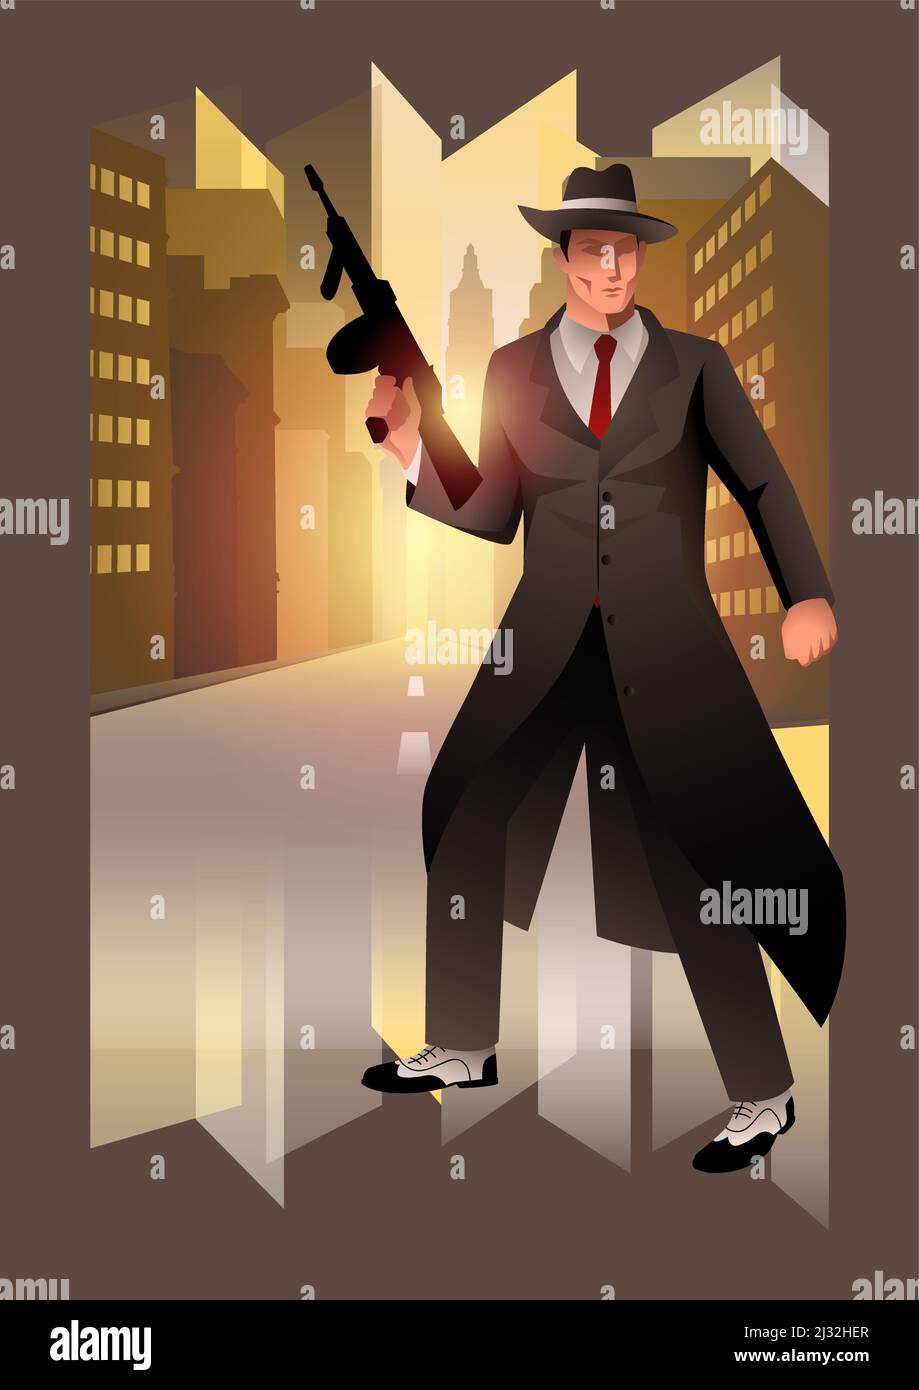 Illustration d'un homme tenant une mitrailleuse, gangster, mobster, thème de la mafia, style d'illustration de vecteur art déco Illustration de Vecteur